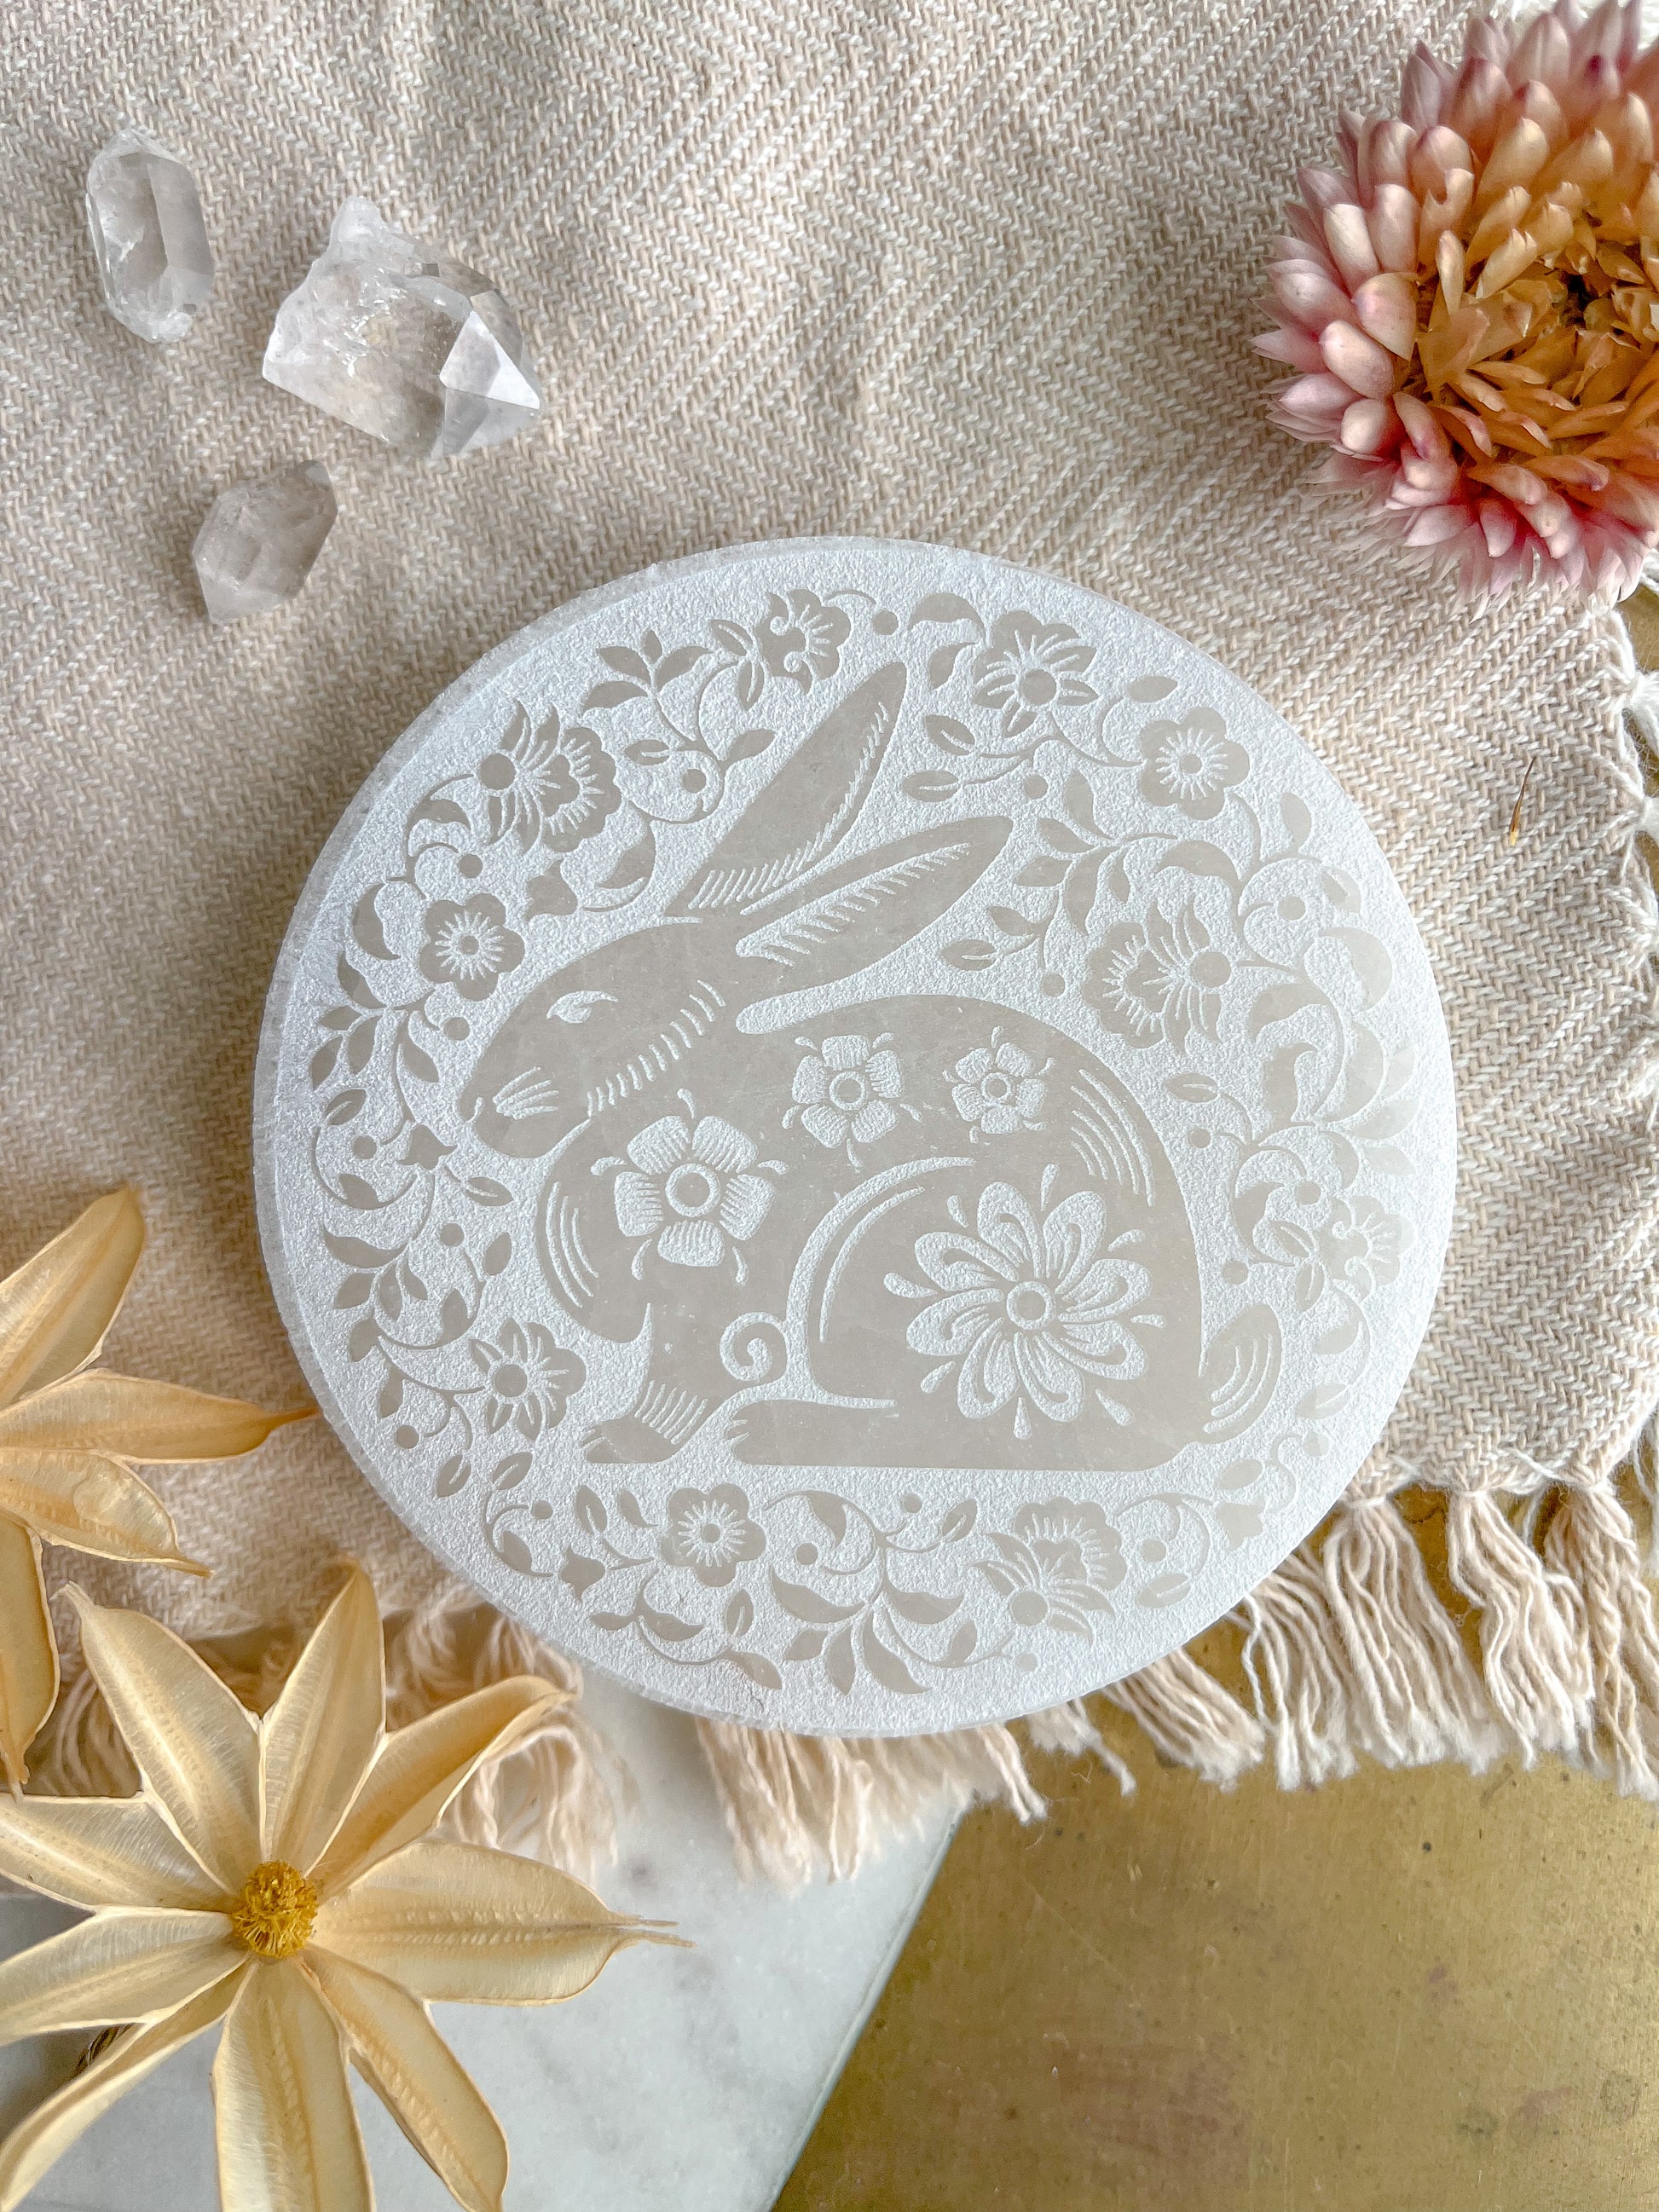 "White Rabbit" Easter Spring White Selenite Crystal Charging Plate Home Decor Gift - Fractalista Designs